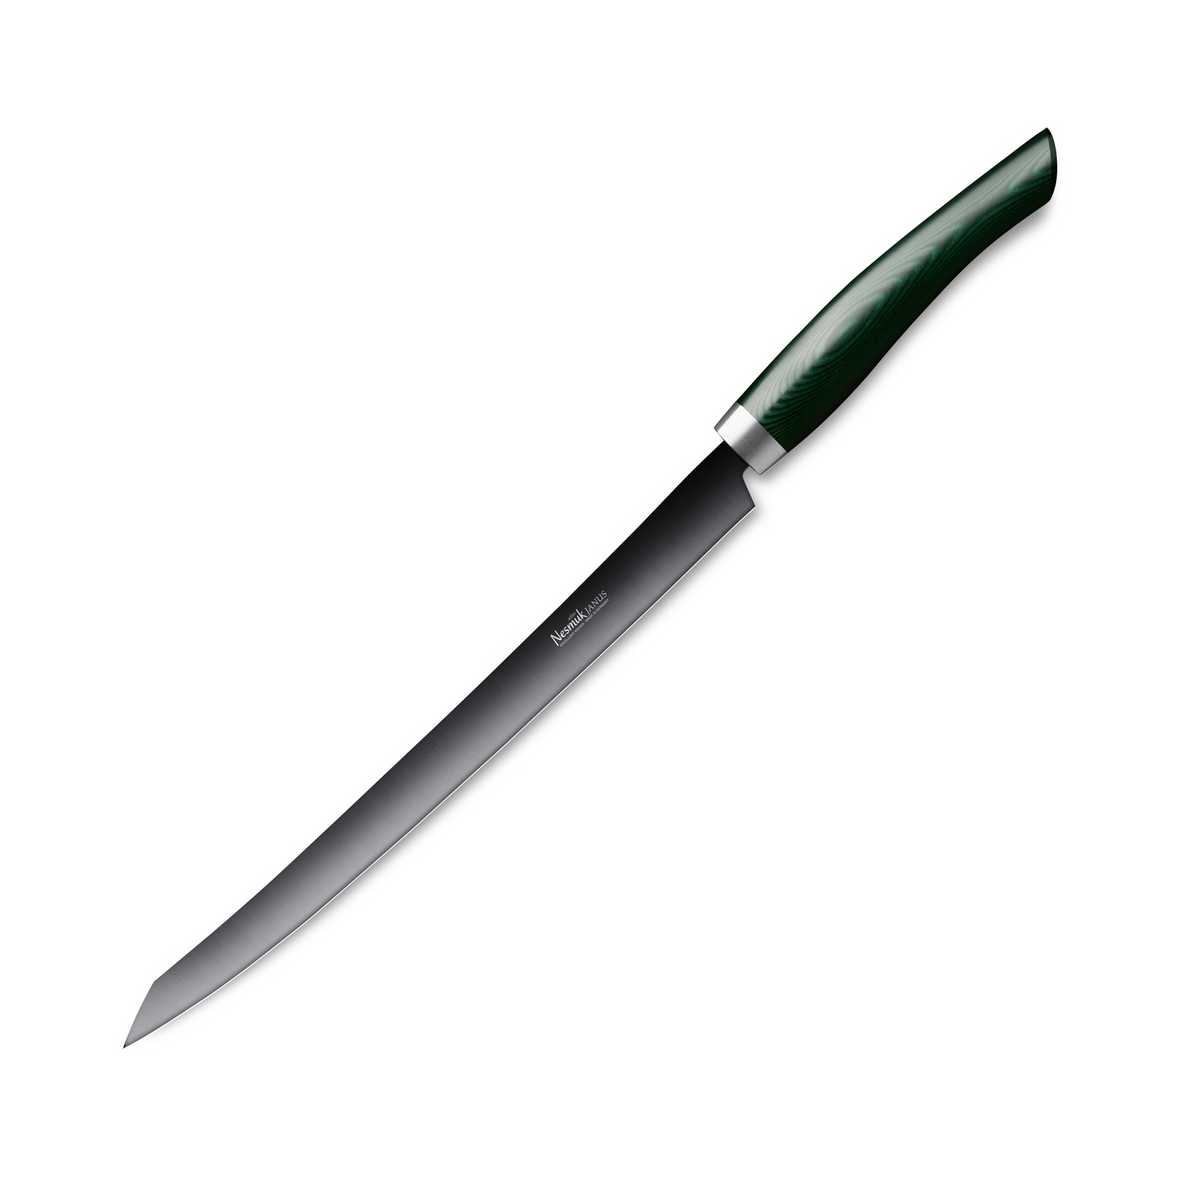 Nesmuk Janus Slicer 26 cm - Niobstahl mit DLC-Beschichtung - Griff Micarta grün